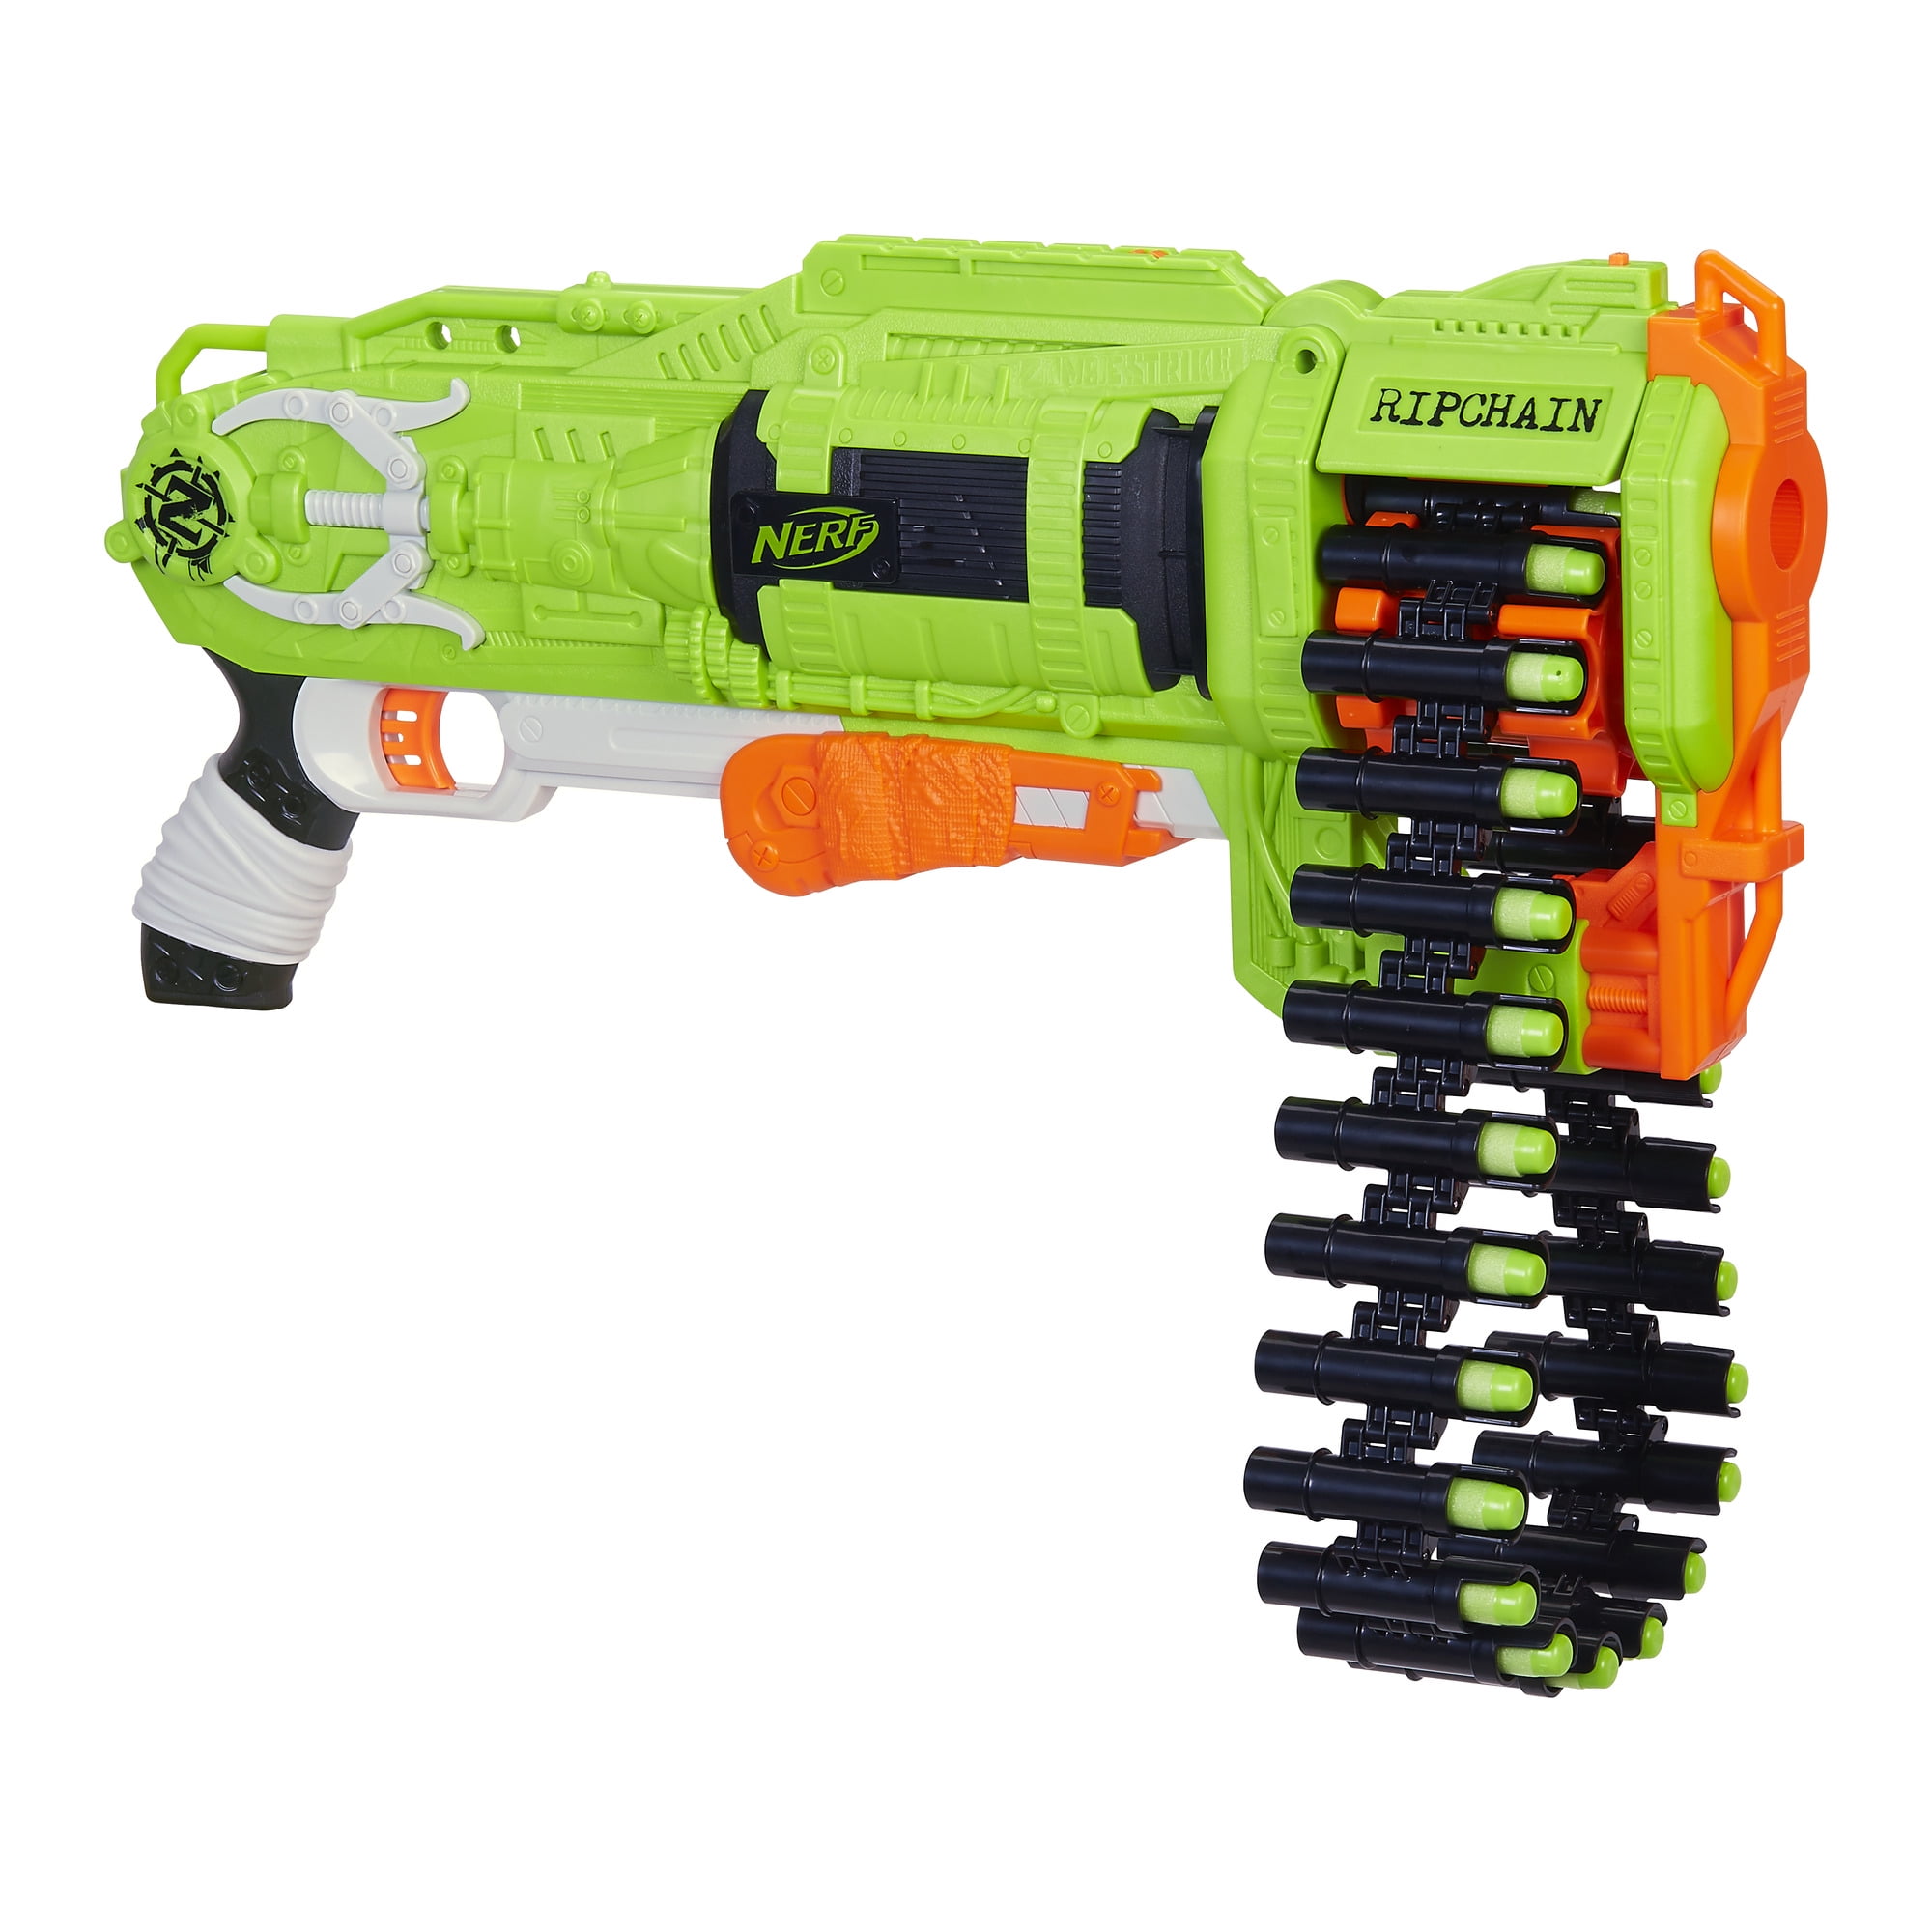 Details about   New NERF Gun Zombie Ripchain Foam Dart Blaster Boy's Toy Gun Shooting 